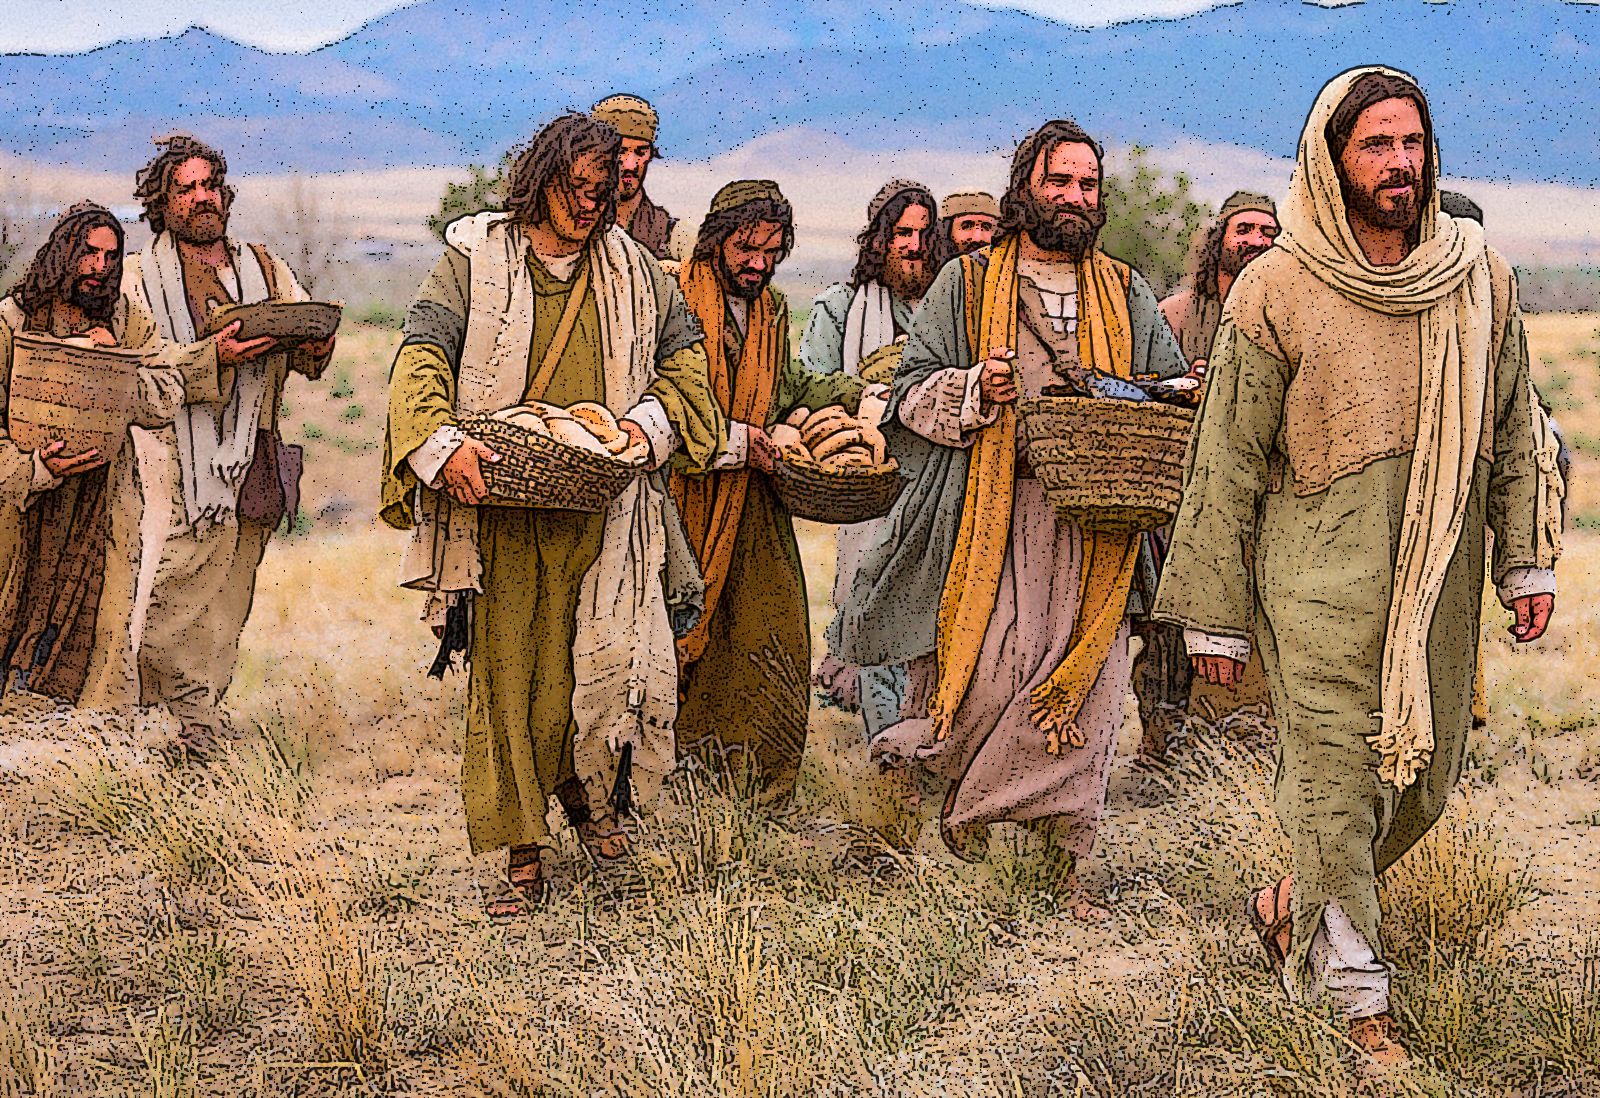 ¿Qué tuvieron de Especial los Milagros de Curación que hizo Jesús?